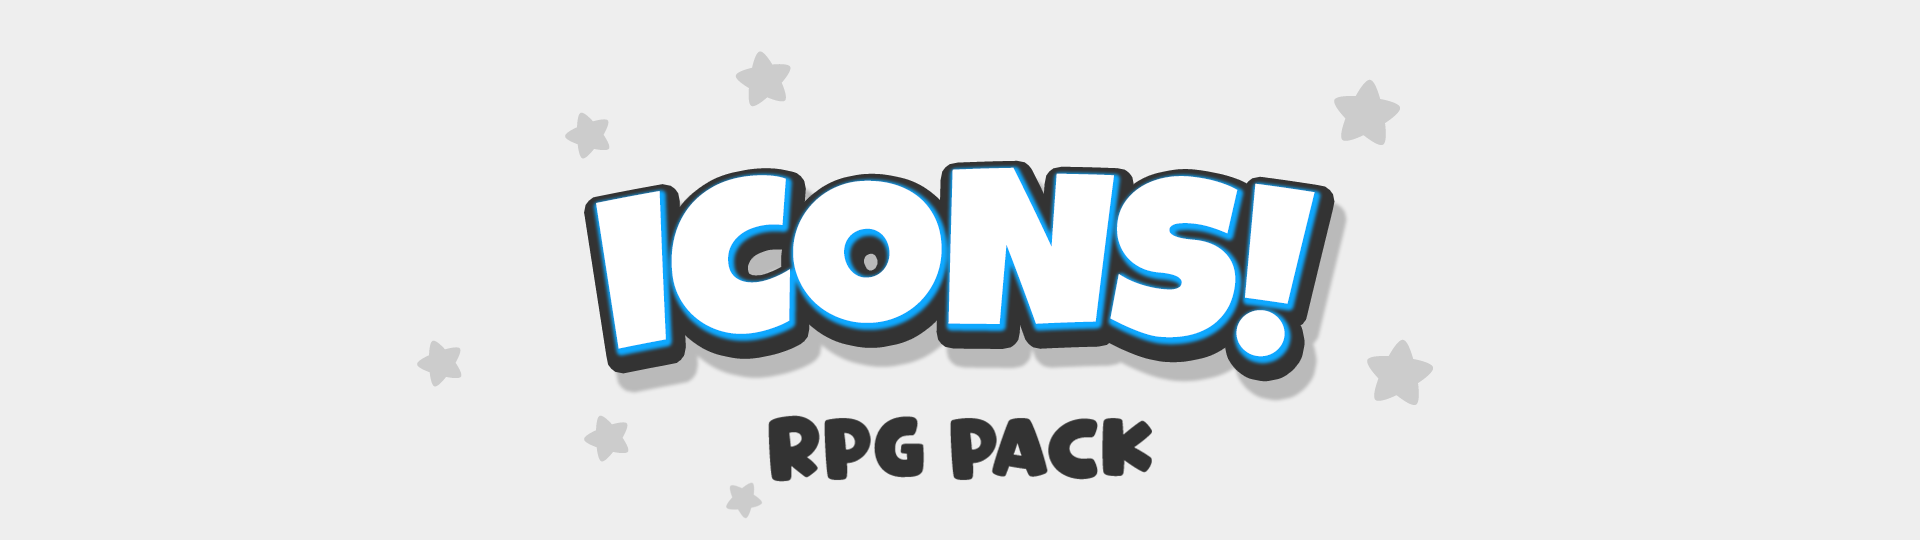 4500 RPG Skill Icons